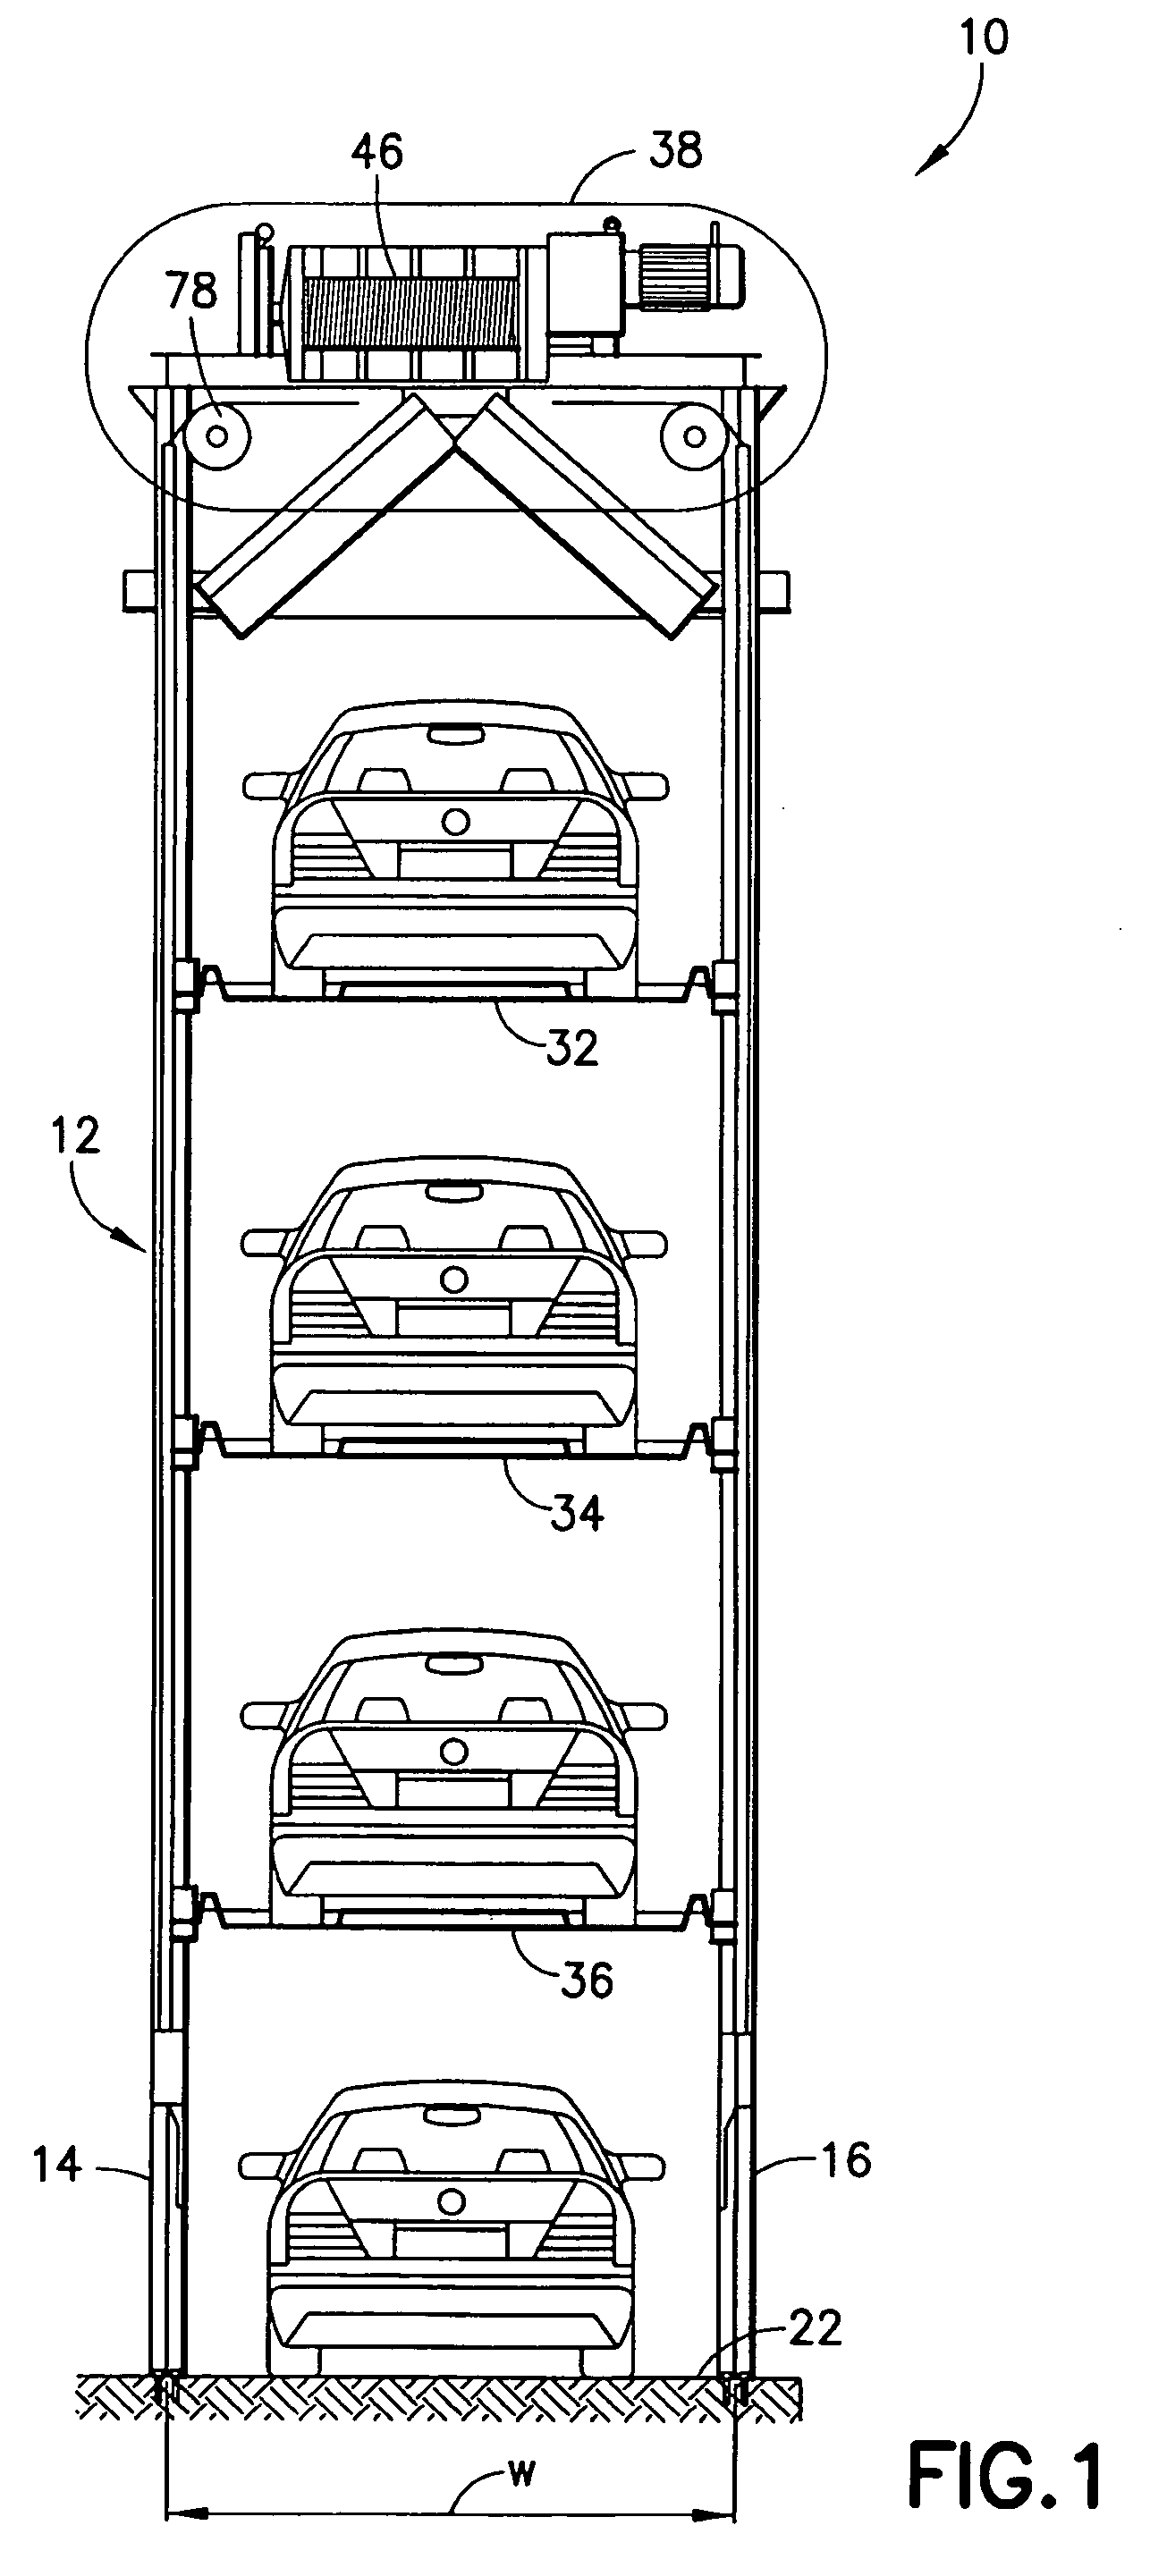 Quadruple vehicle parking system